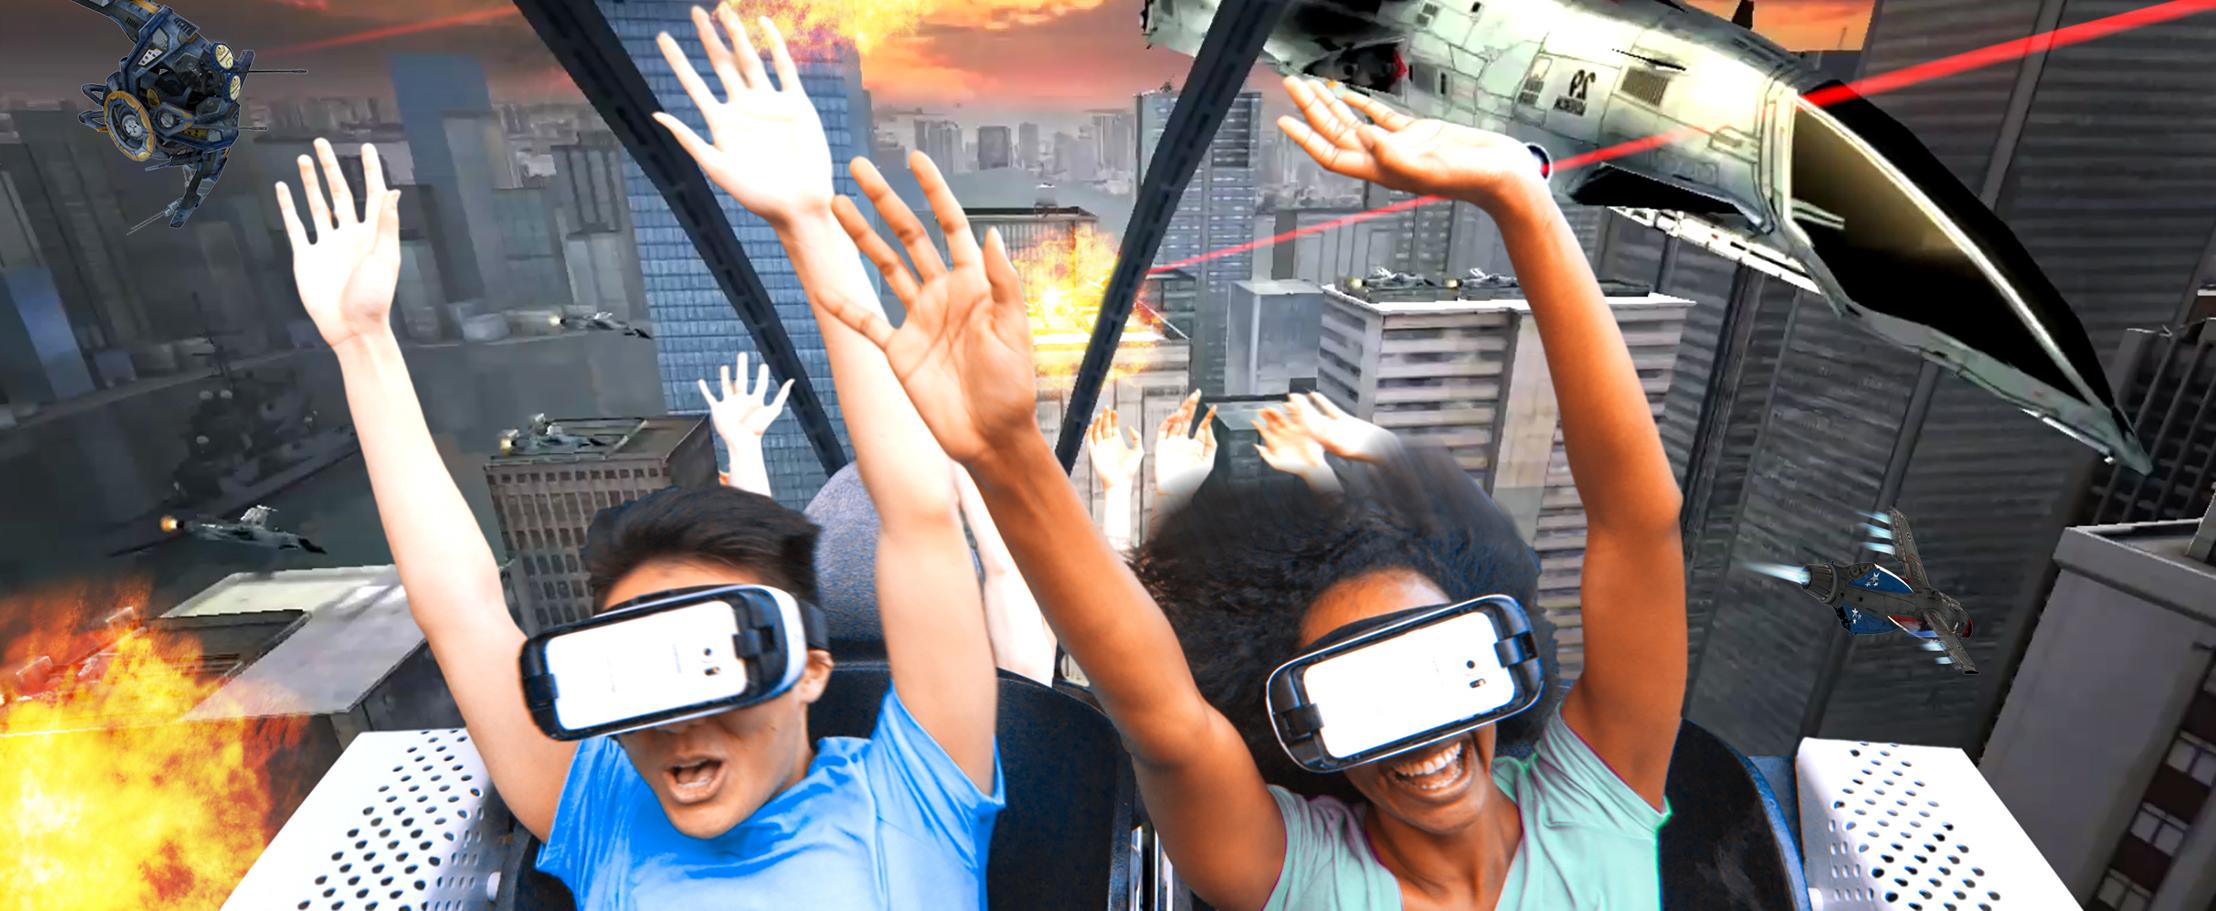 Люди будущего начнут смотреть ТВ через виртуальную реальность